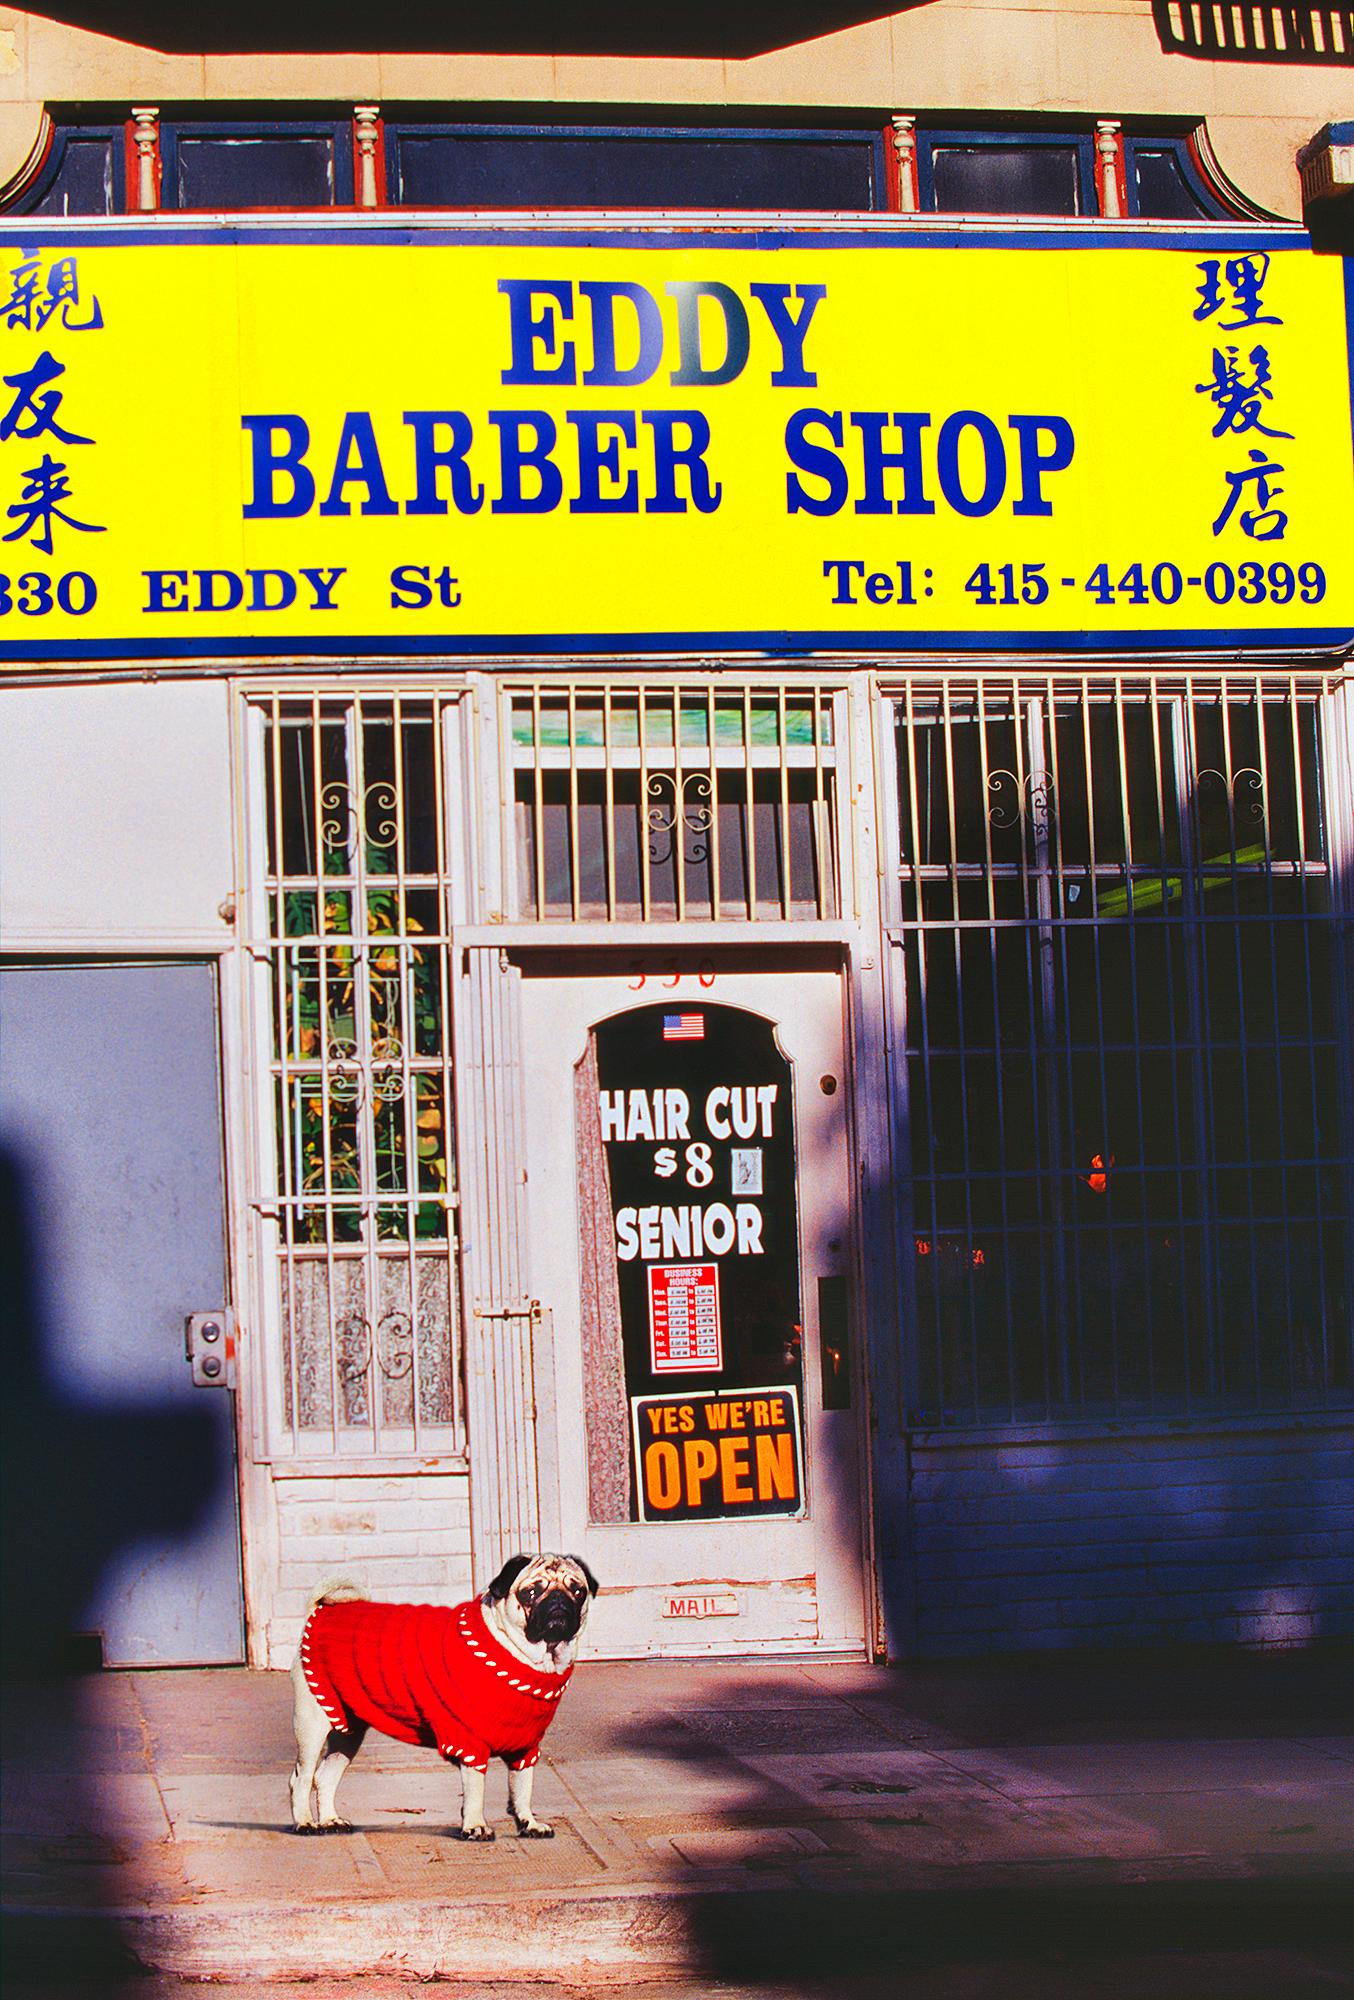 Mitchell Funk Figurative Photograph - Eccentric Bulldog Portrait with Red Sweater in the Tenderloin, San Francisco